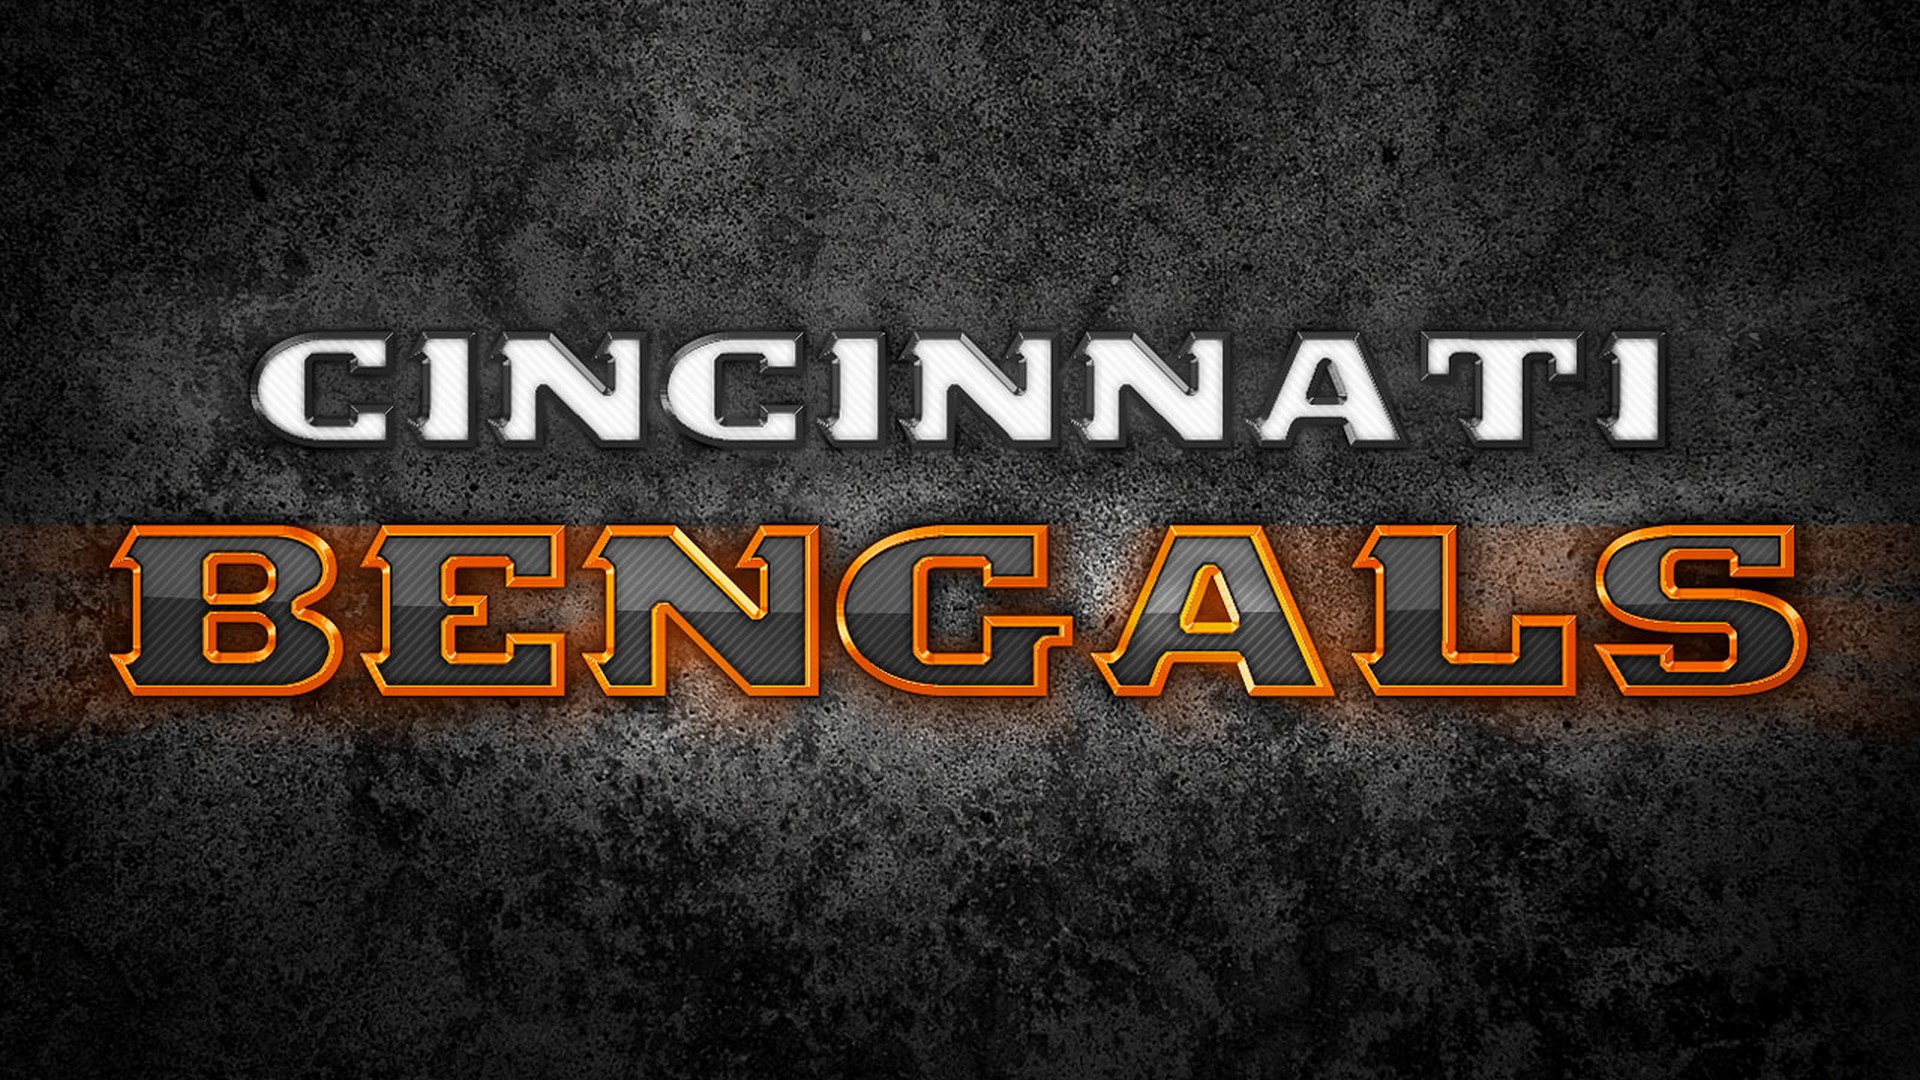 Cincinnati Bengals Desktop Wallpapers With Resolution 1920X1080